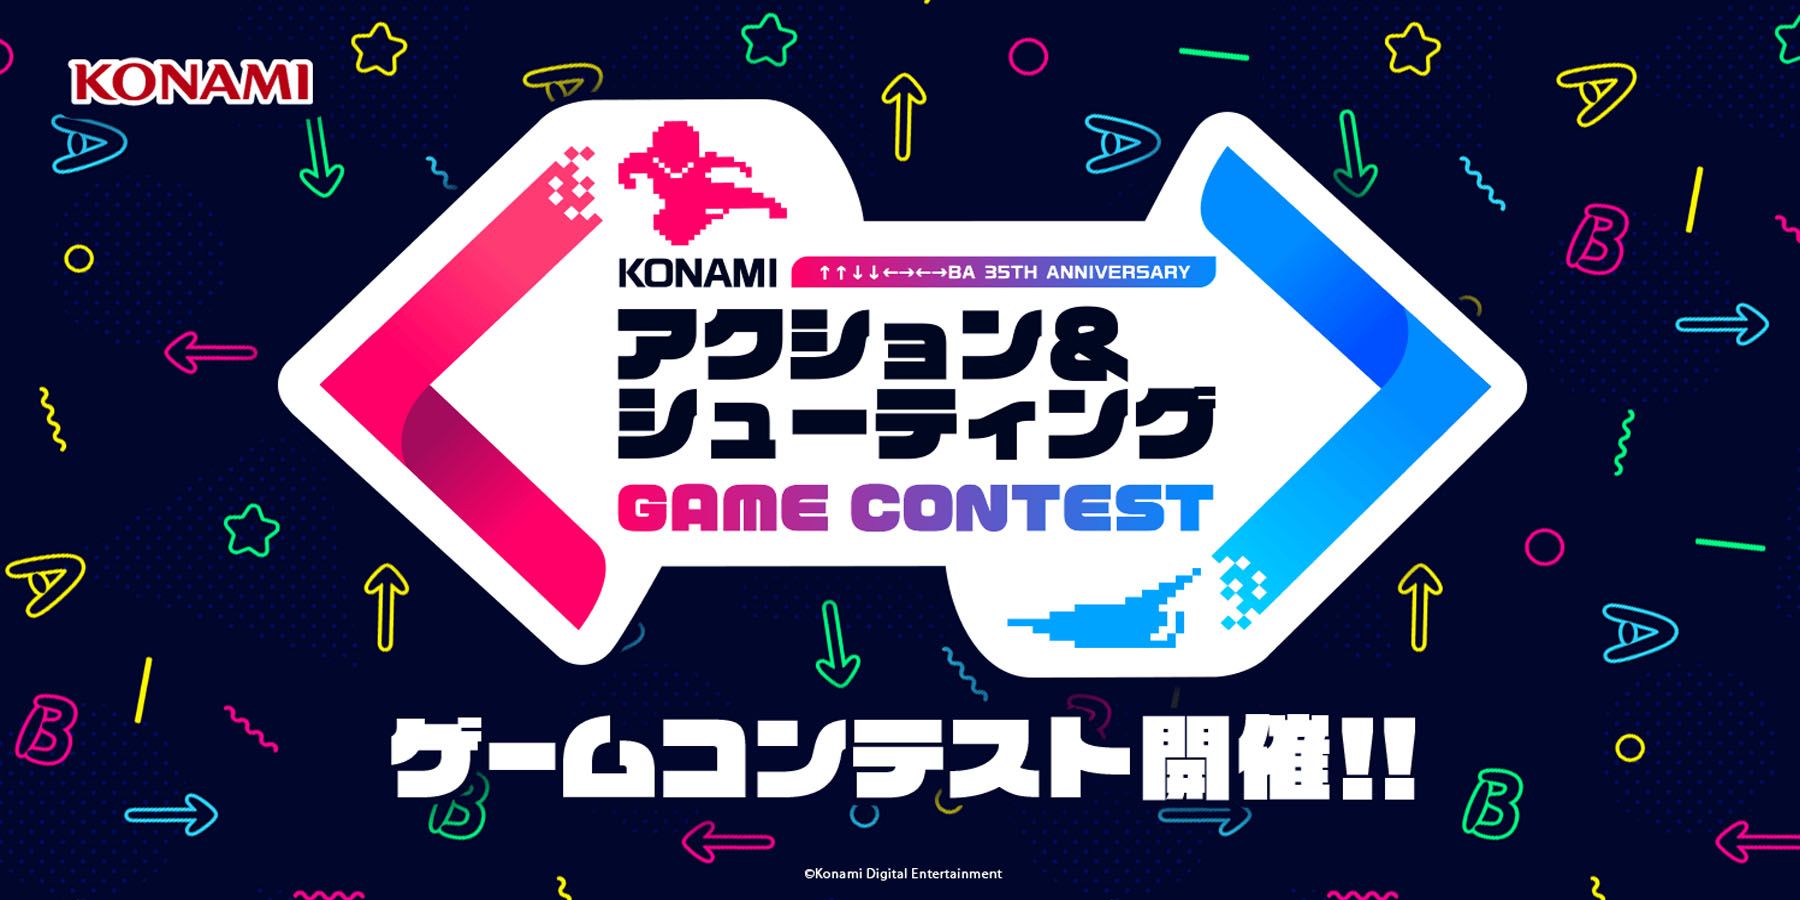 Konami מזמין מפתחי אינדי ליצור משחקים המבוססים על זיכיונות קלאסיים